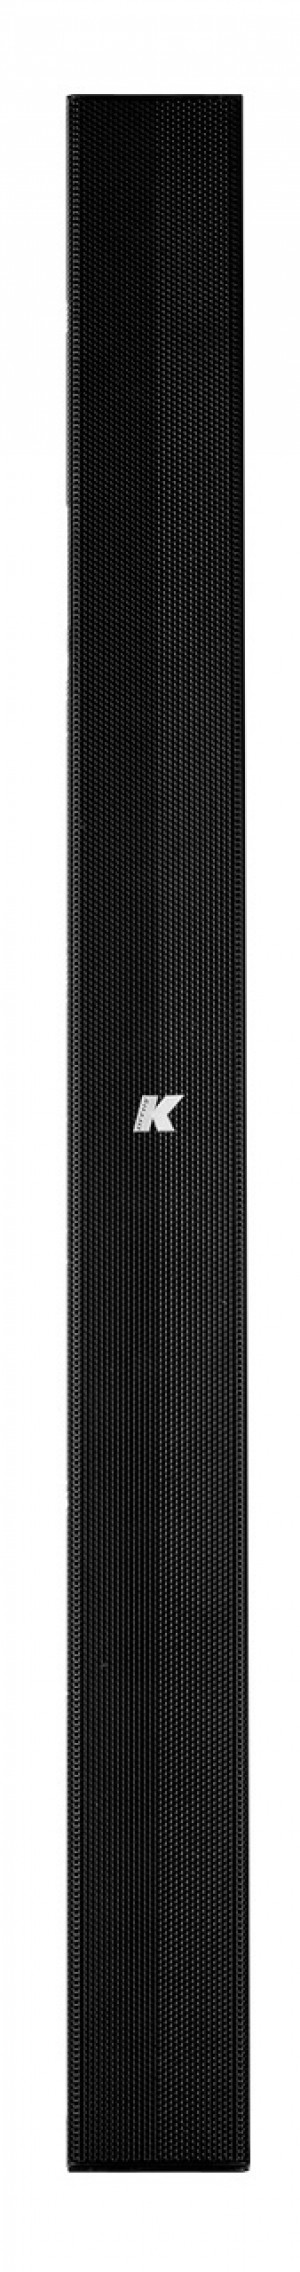 K-Array KP102 Mark I Passive Line Array Speaker